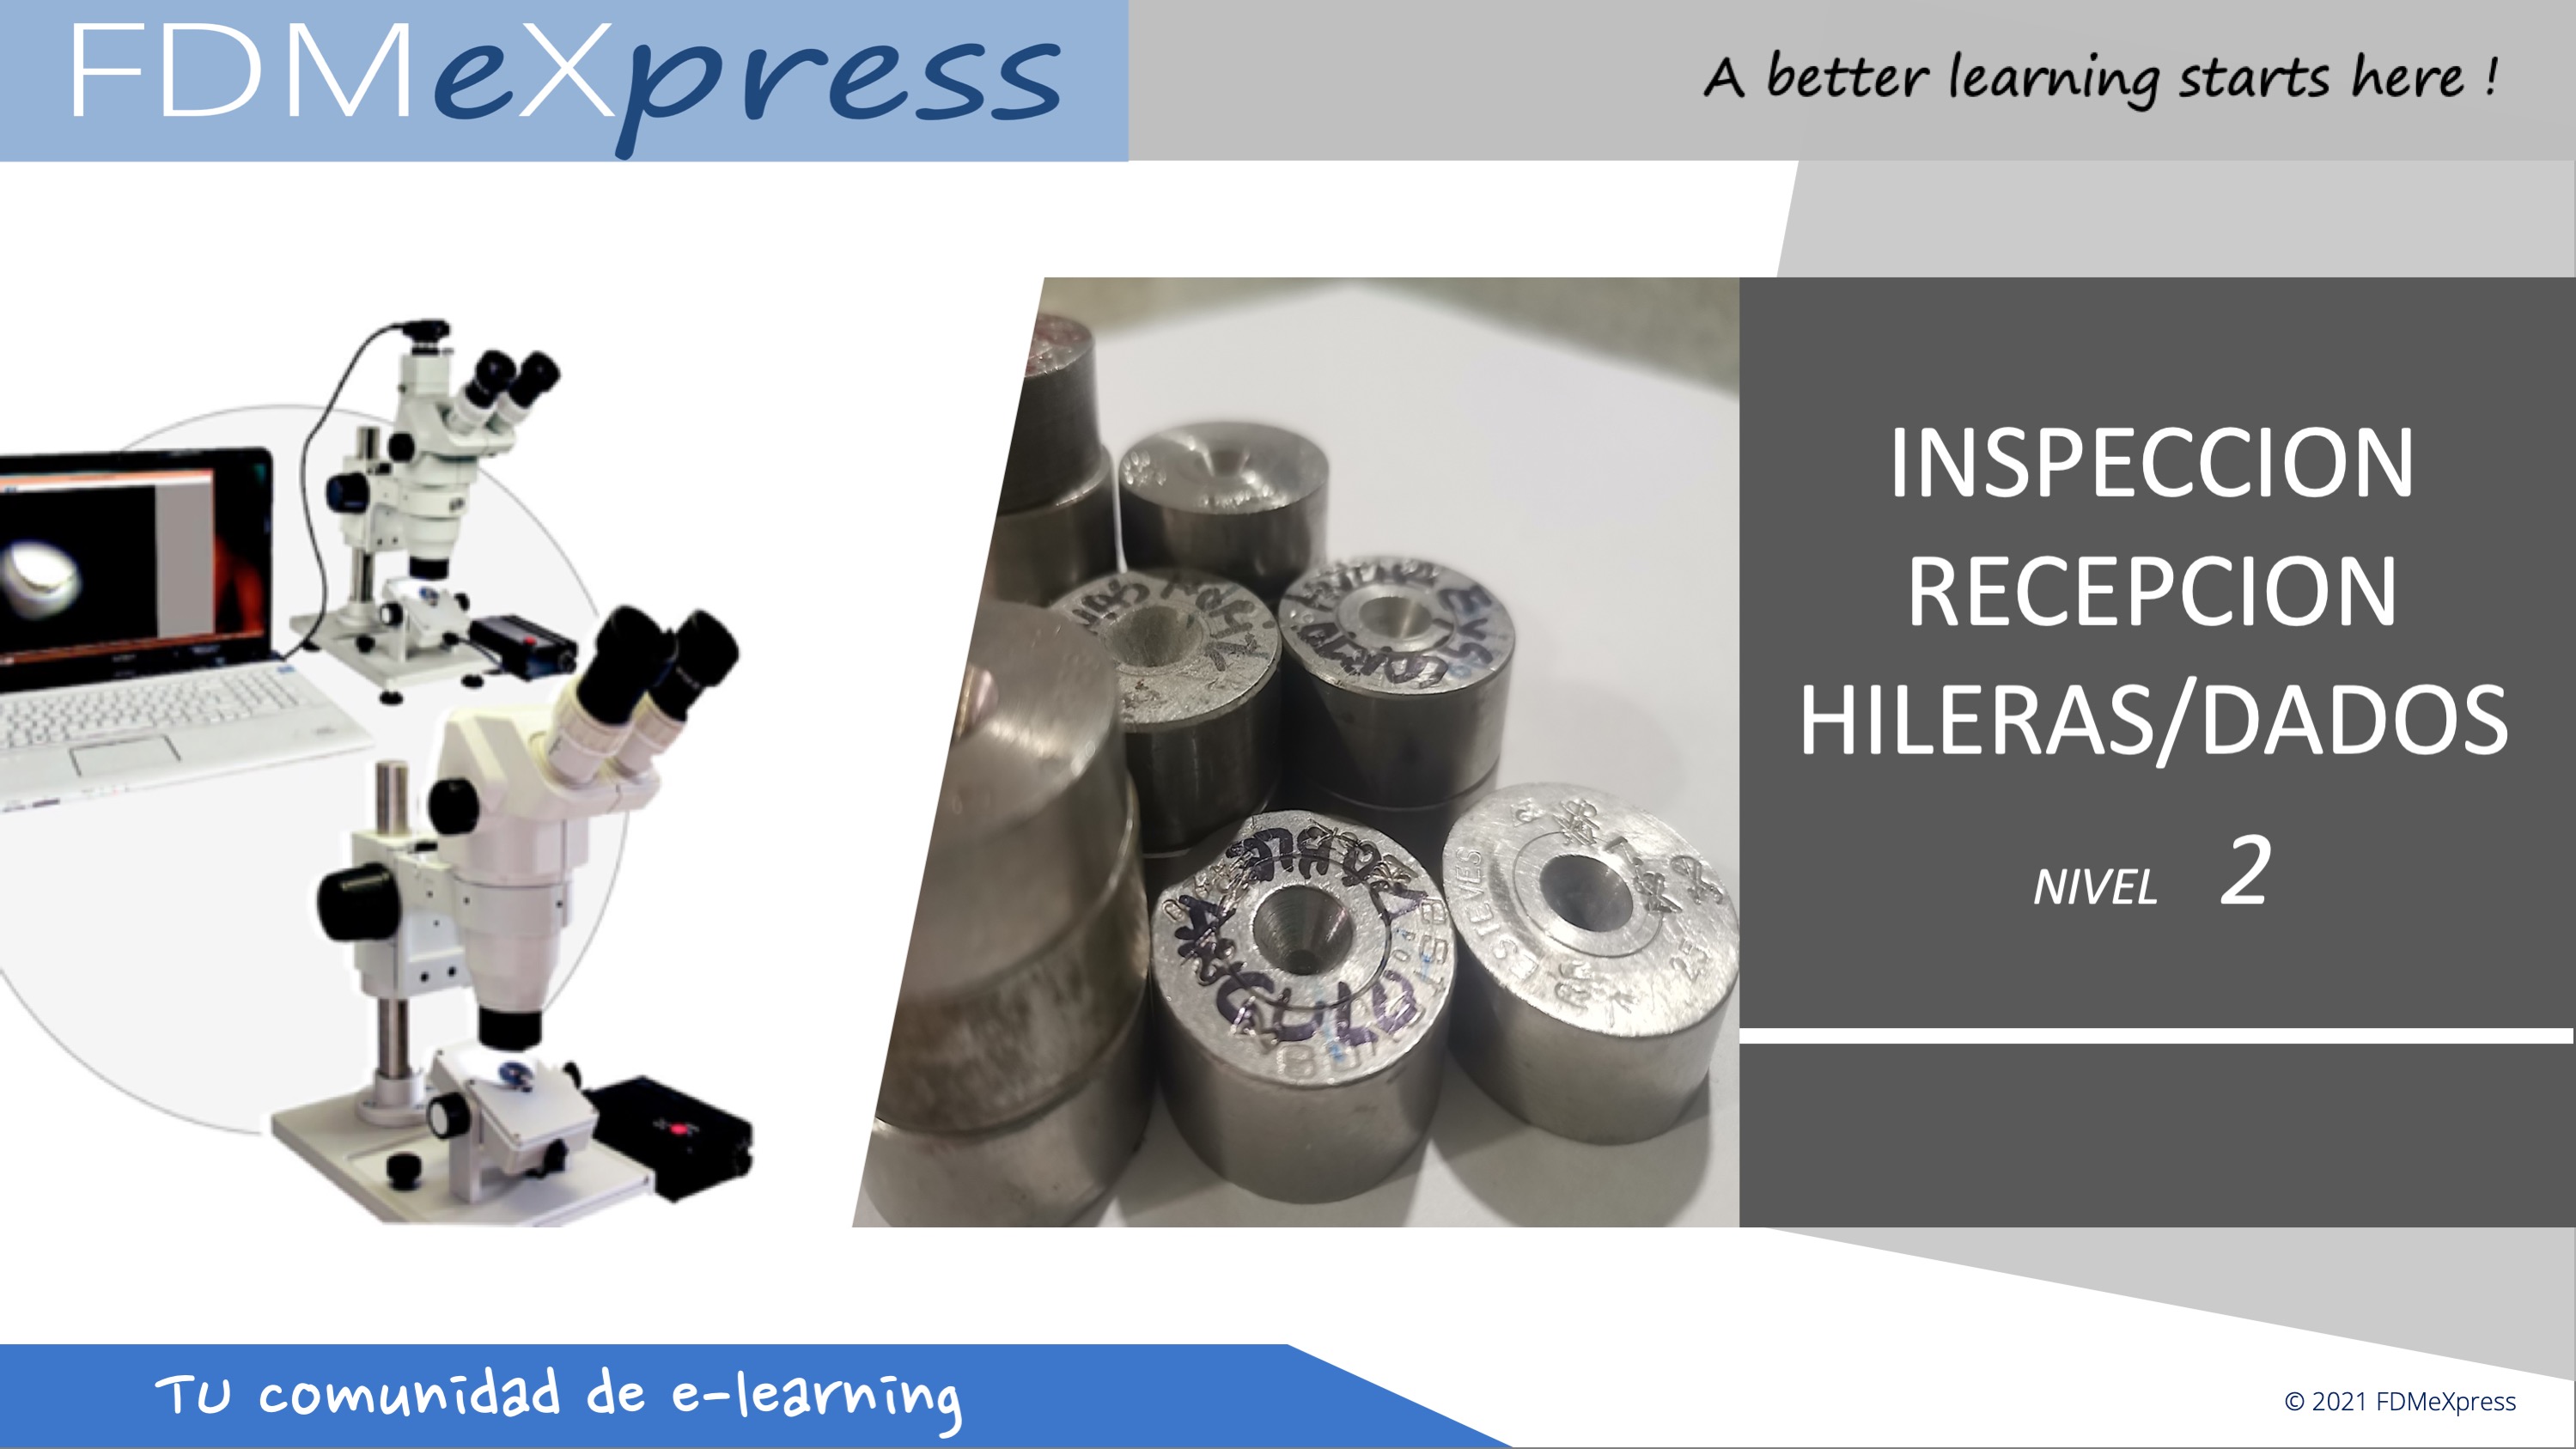 Inspección de Recepción de Hileras/dados - Nivel 2